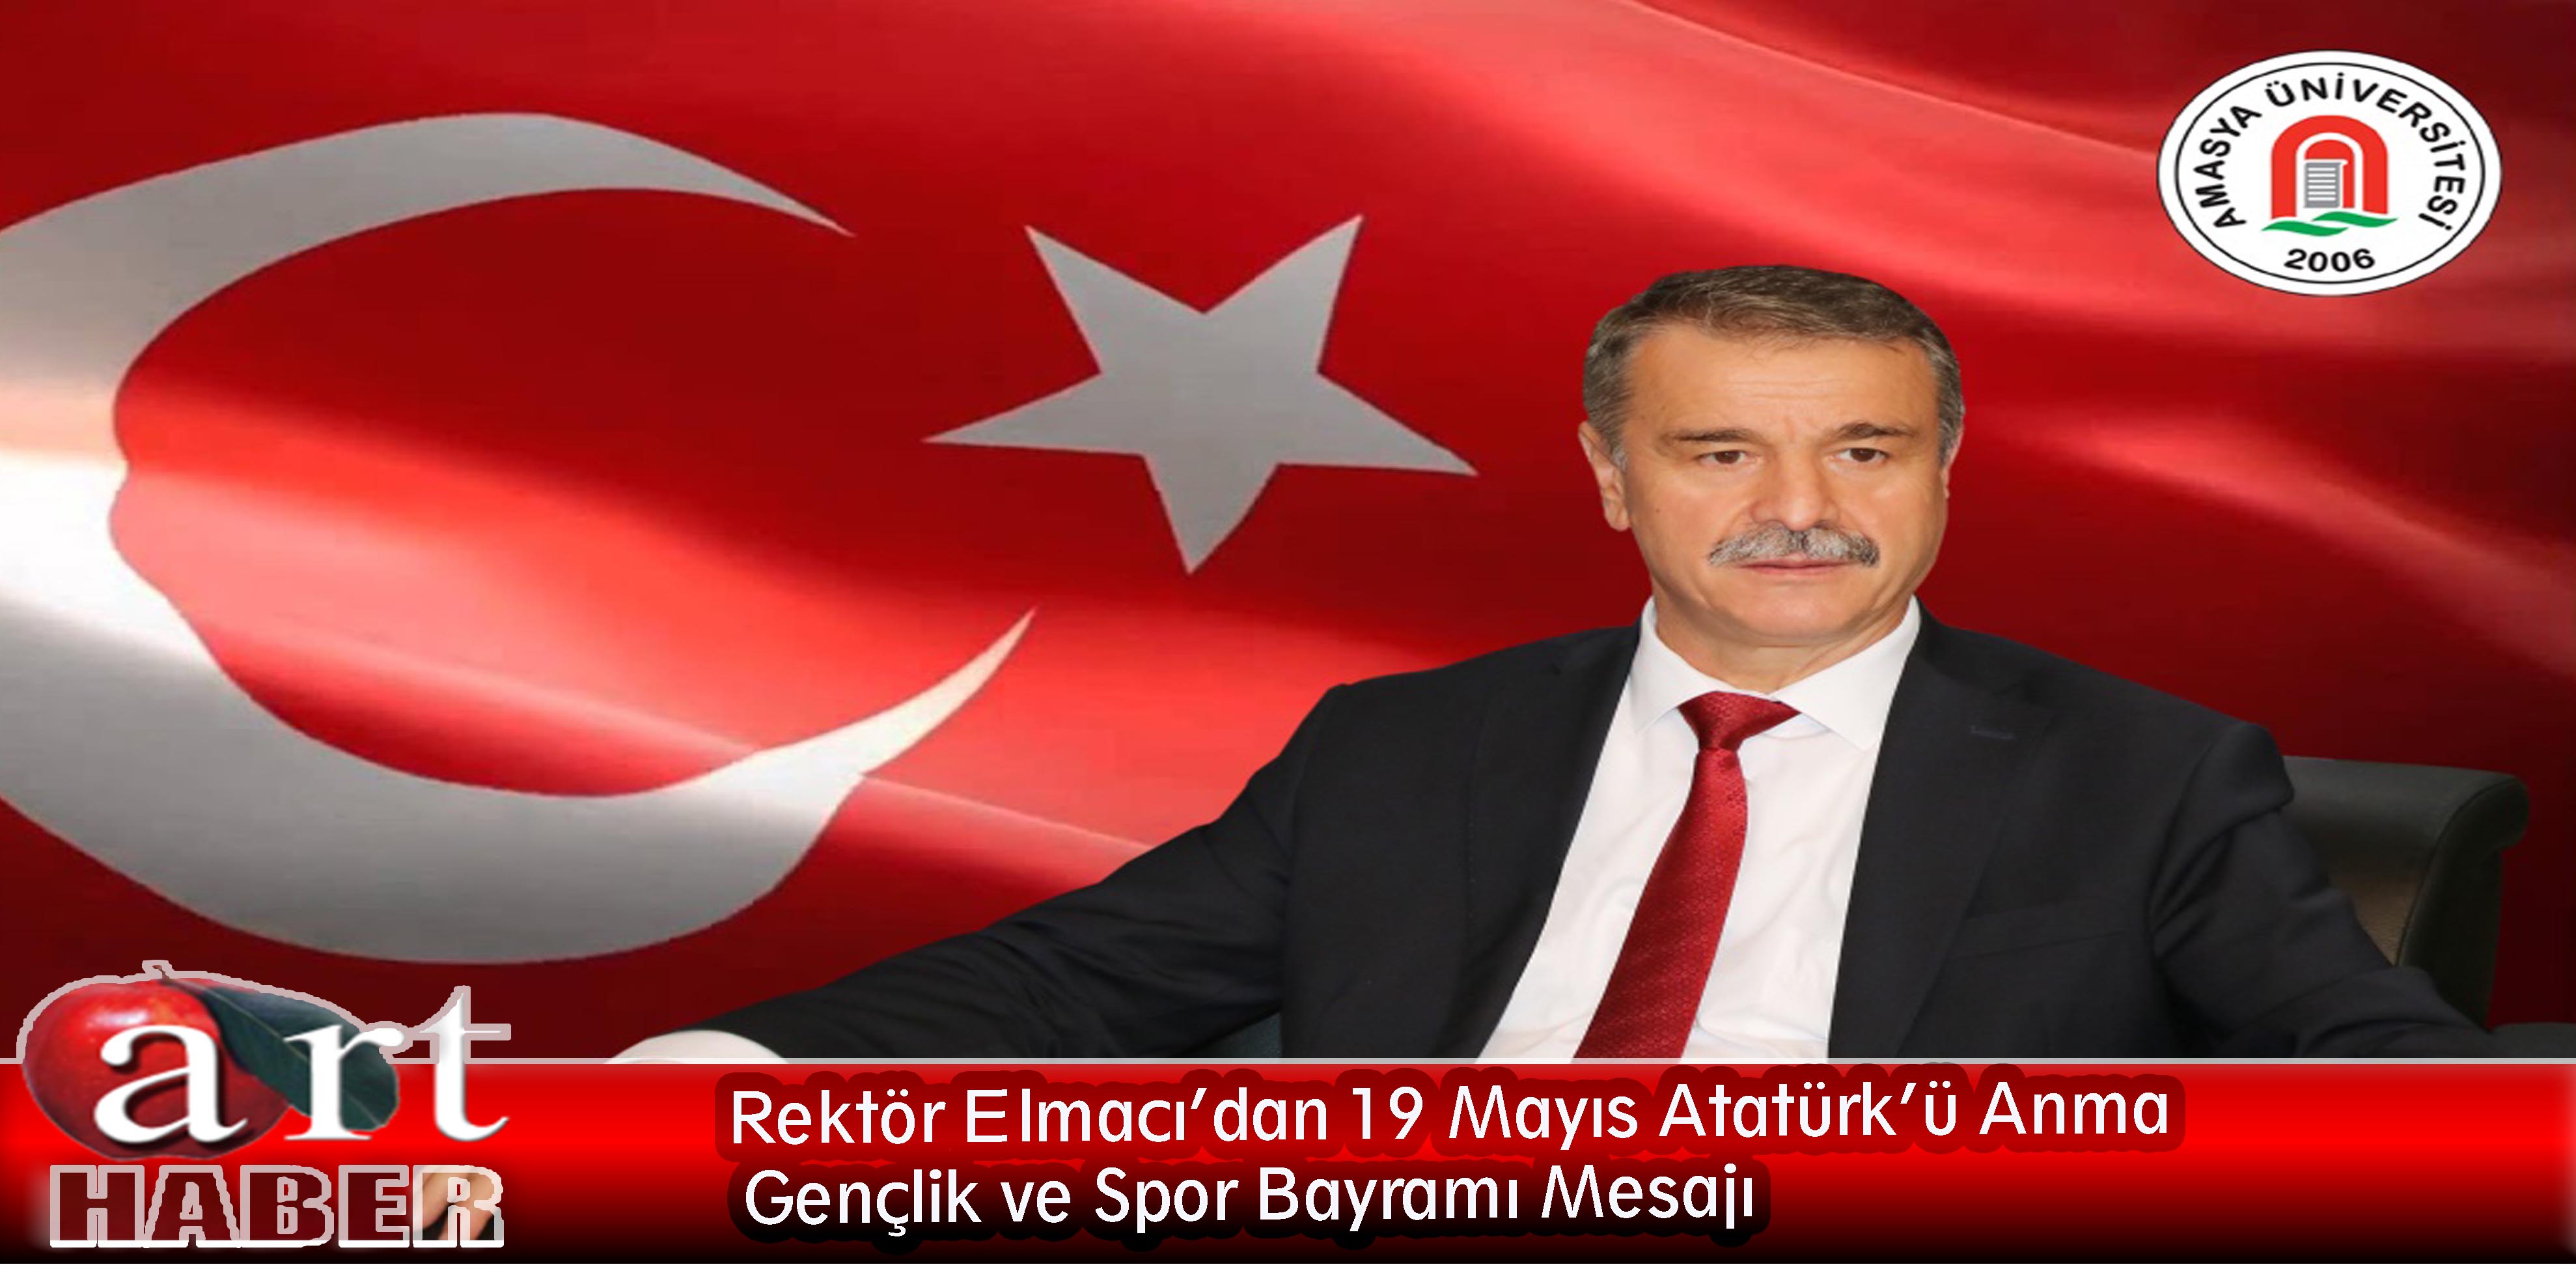 Rektör Elmacı’dan 19 Mayıs Atatürk’ü Anma  Gençlik ve Spor Bayramı Mesajı